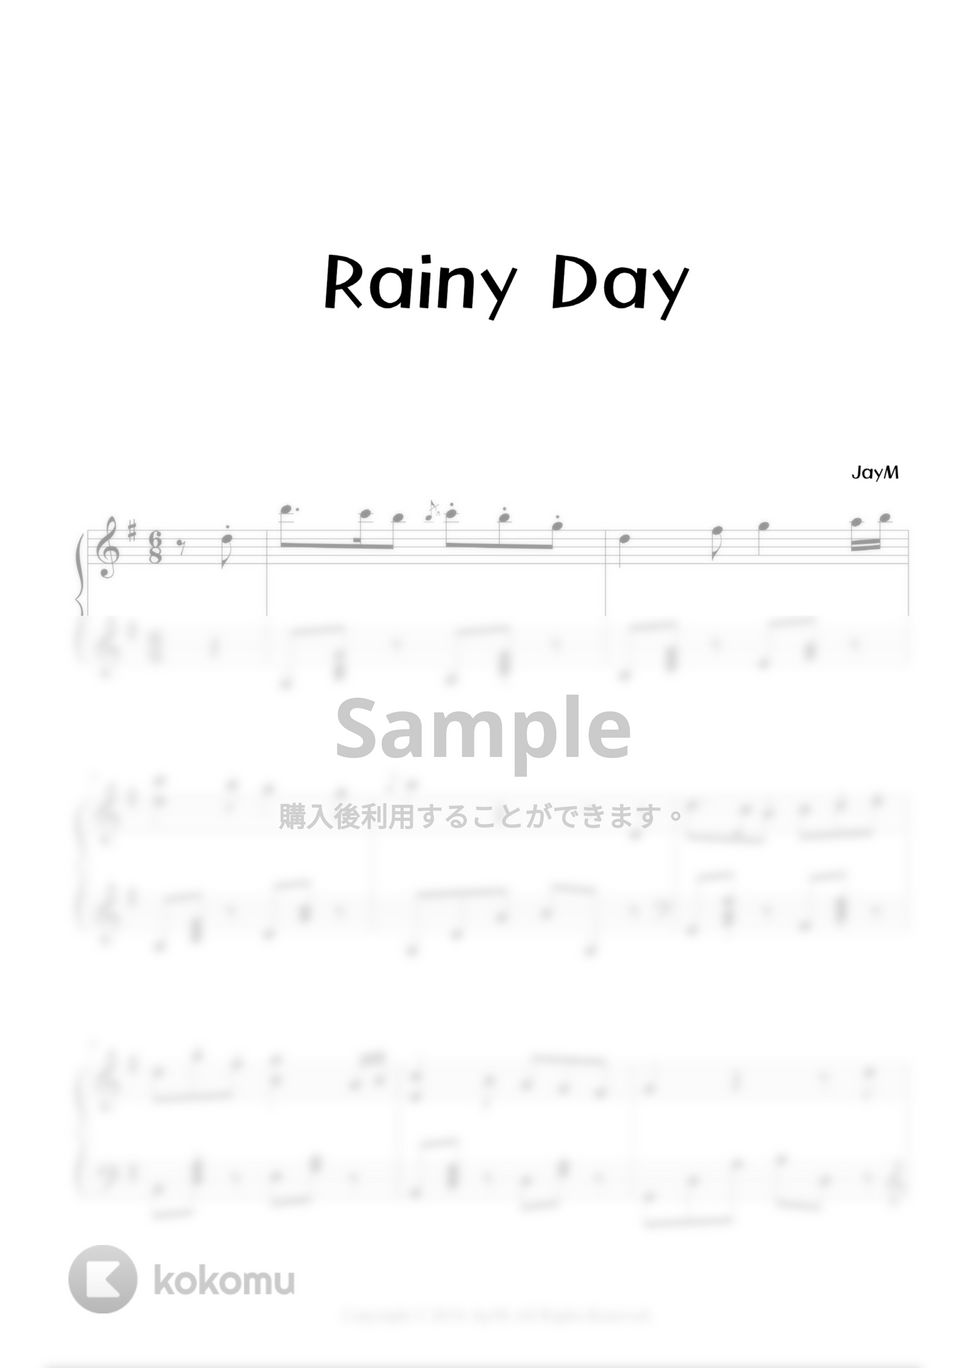 JayM - Rainy Day